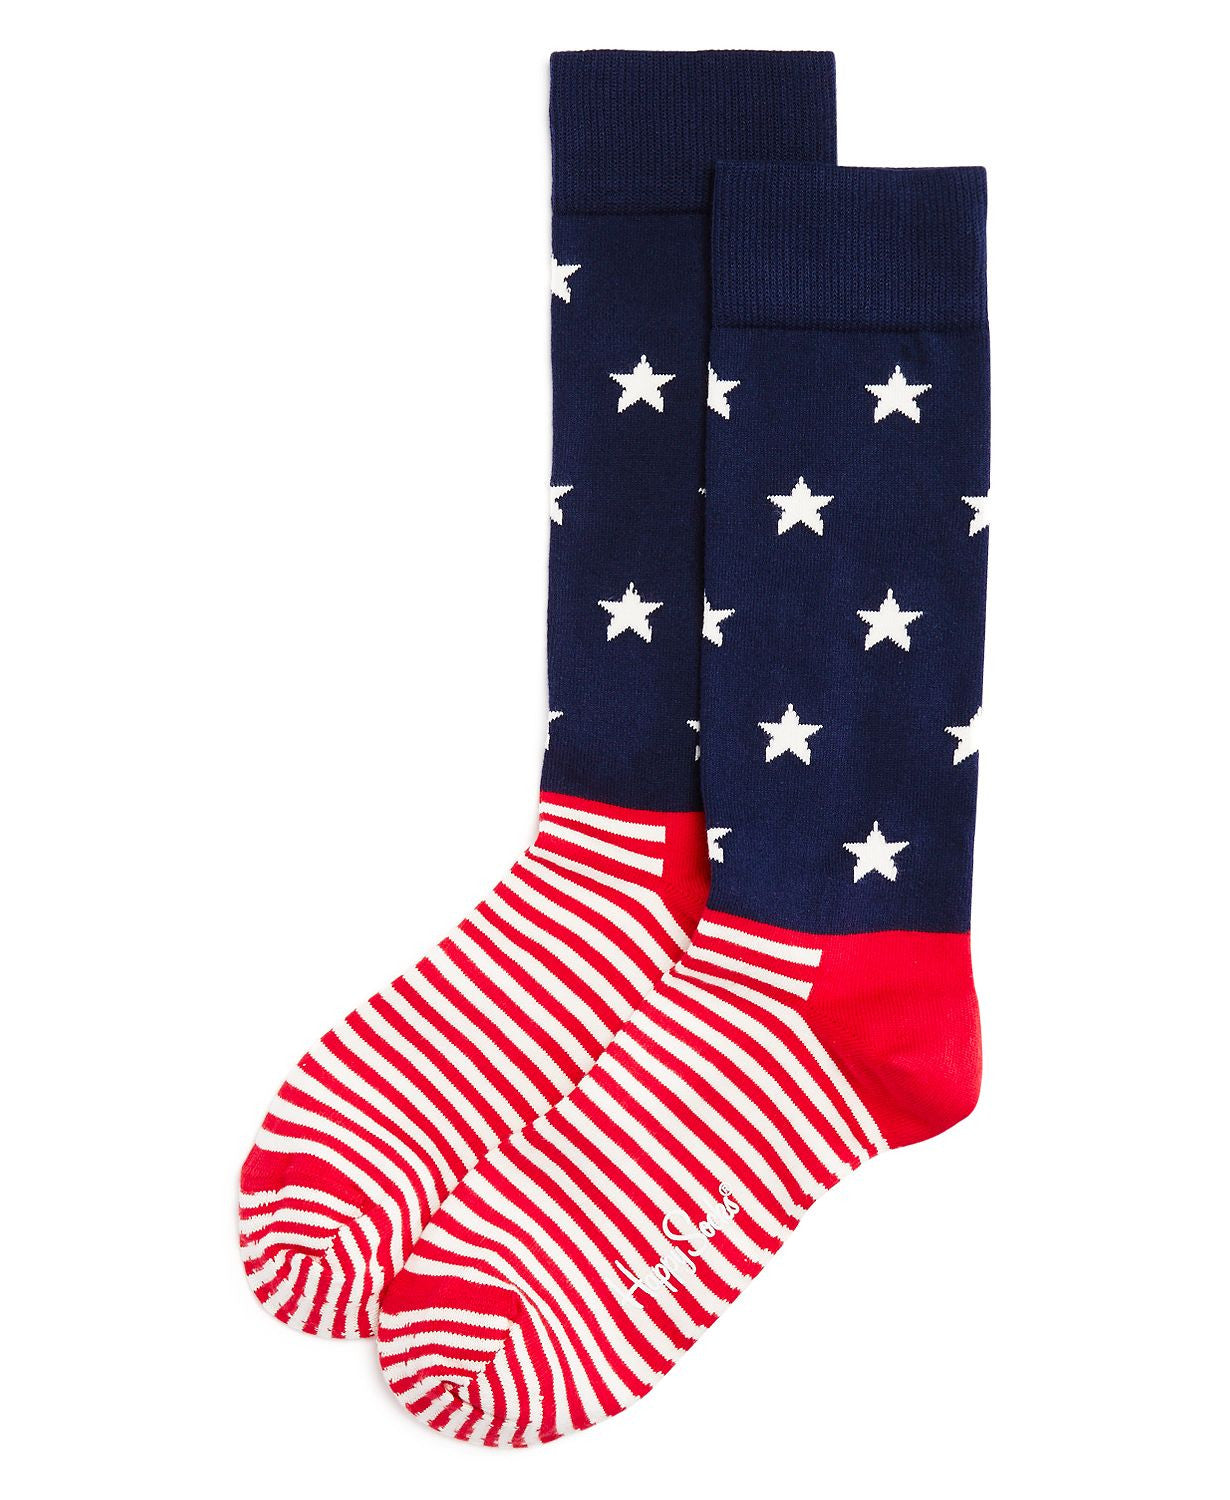 Happy Socks Star Stripe Socks Blue/red/white